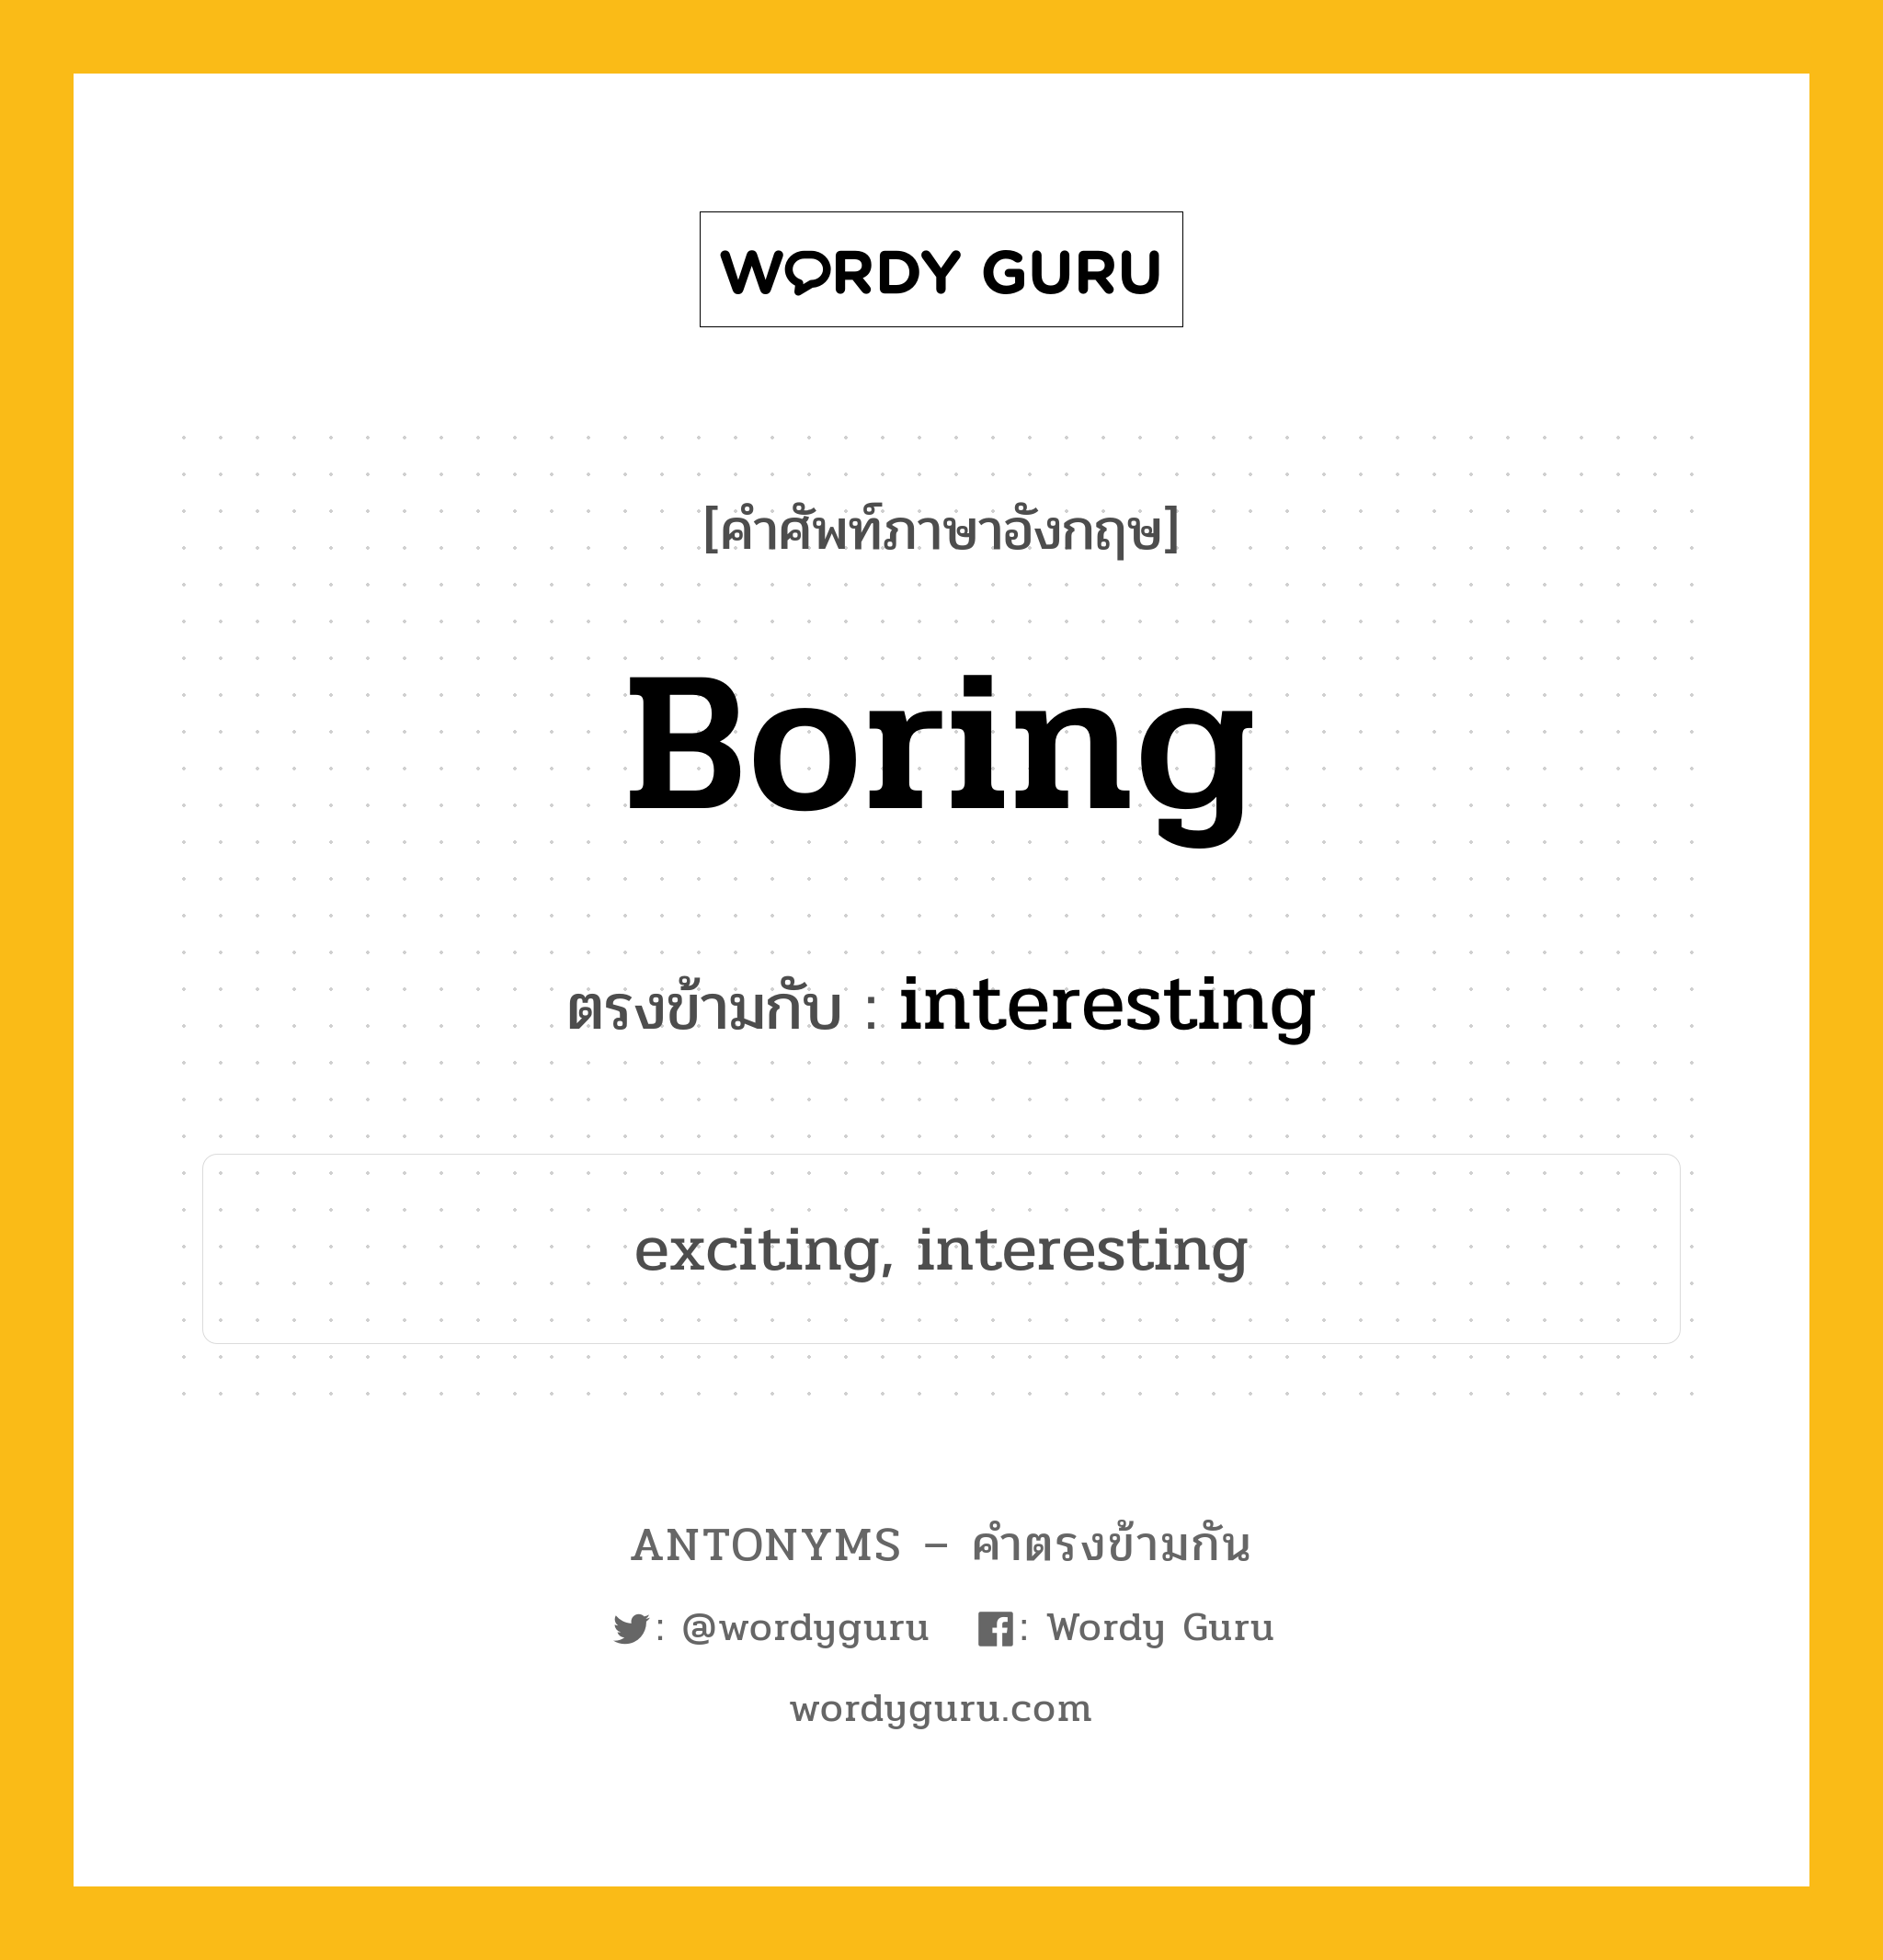 boring เป็นคำตรงข้ามกับคำไหนบ้าง?, คำศัพท์ภาษาอังกฤษ boring ตรงข้ามกับ interesting หมวด interesting